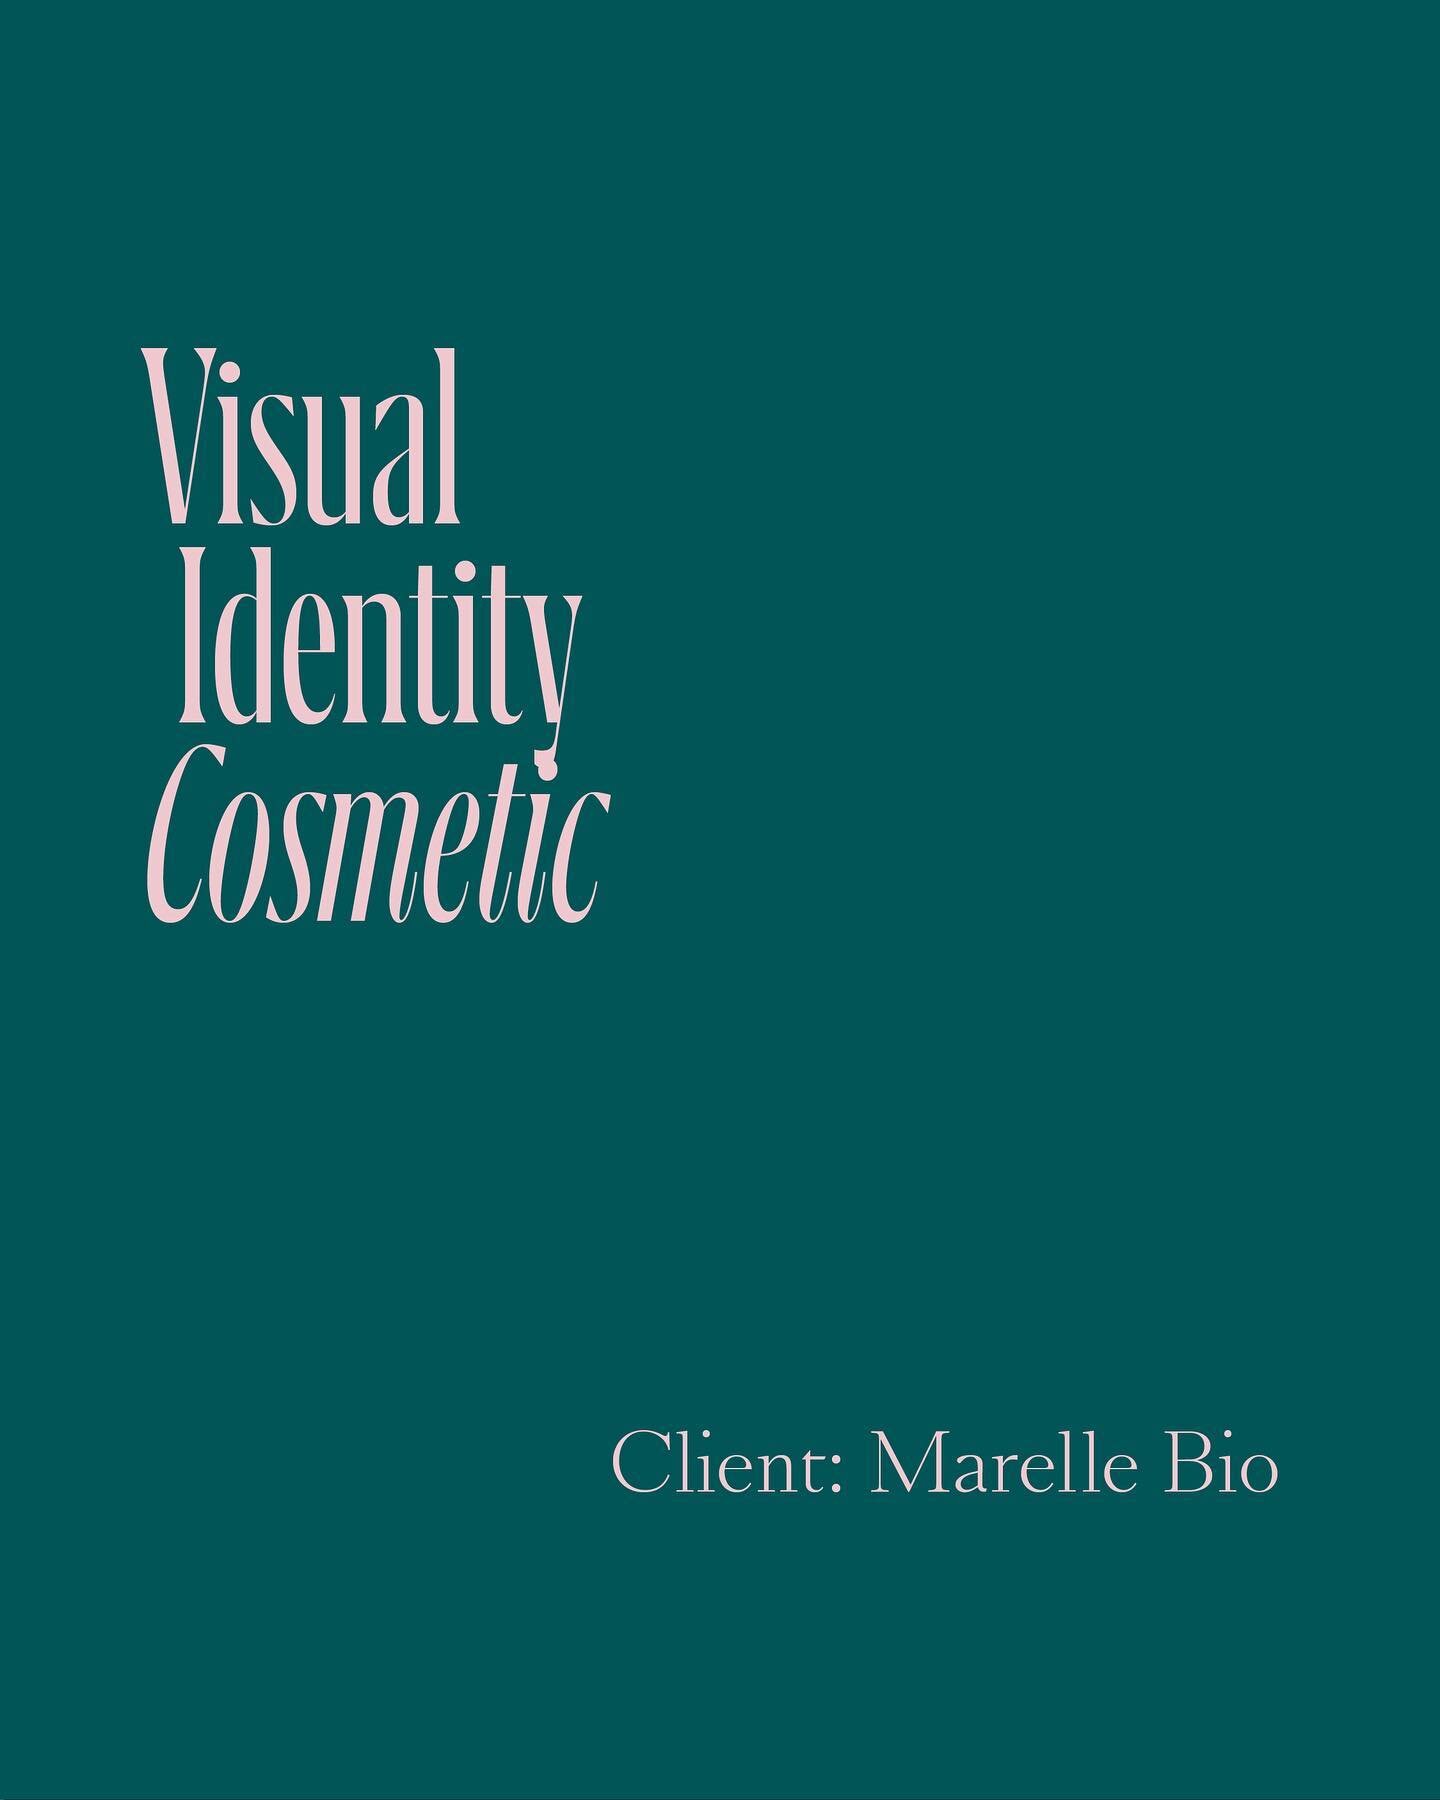 New visual identity for @marelle_bio